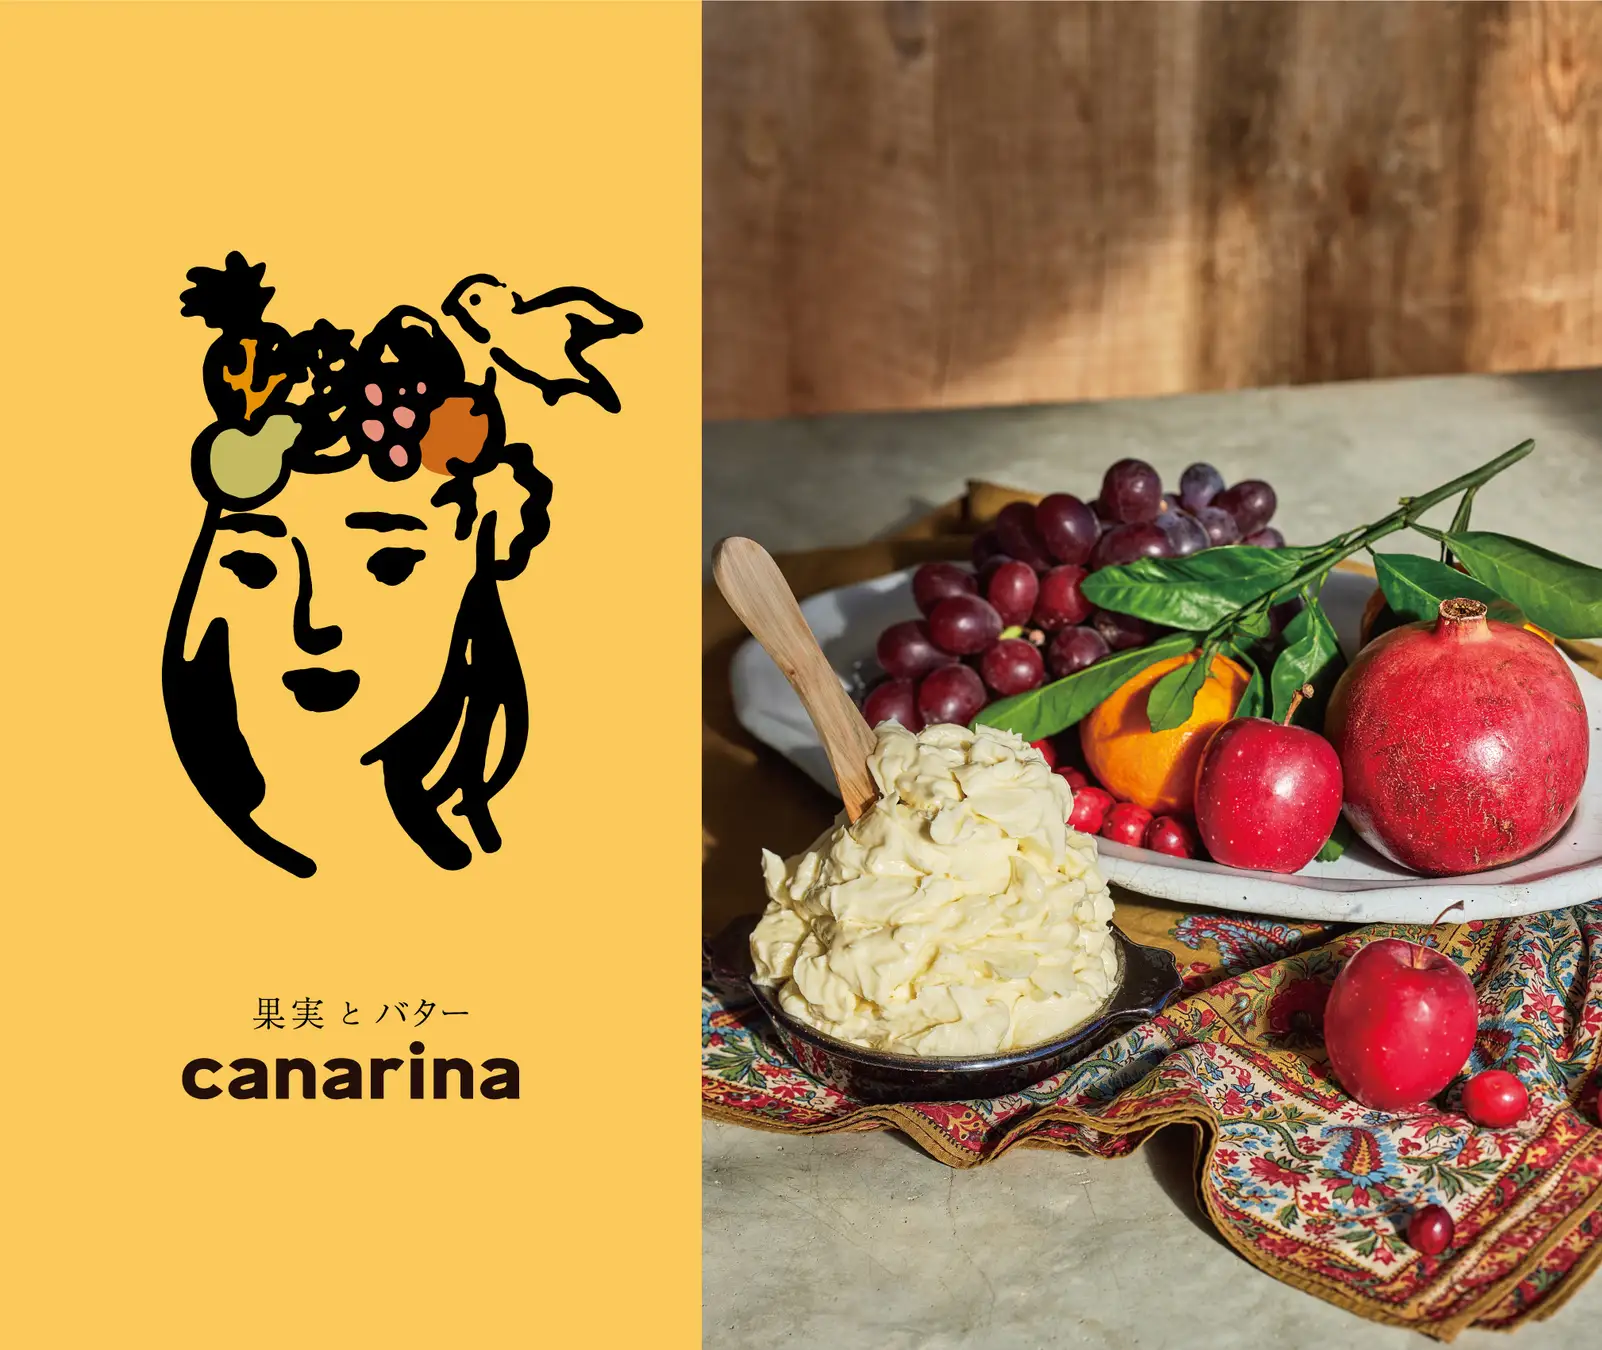 「果実とバターcanarina」のイメージ画像